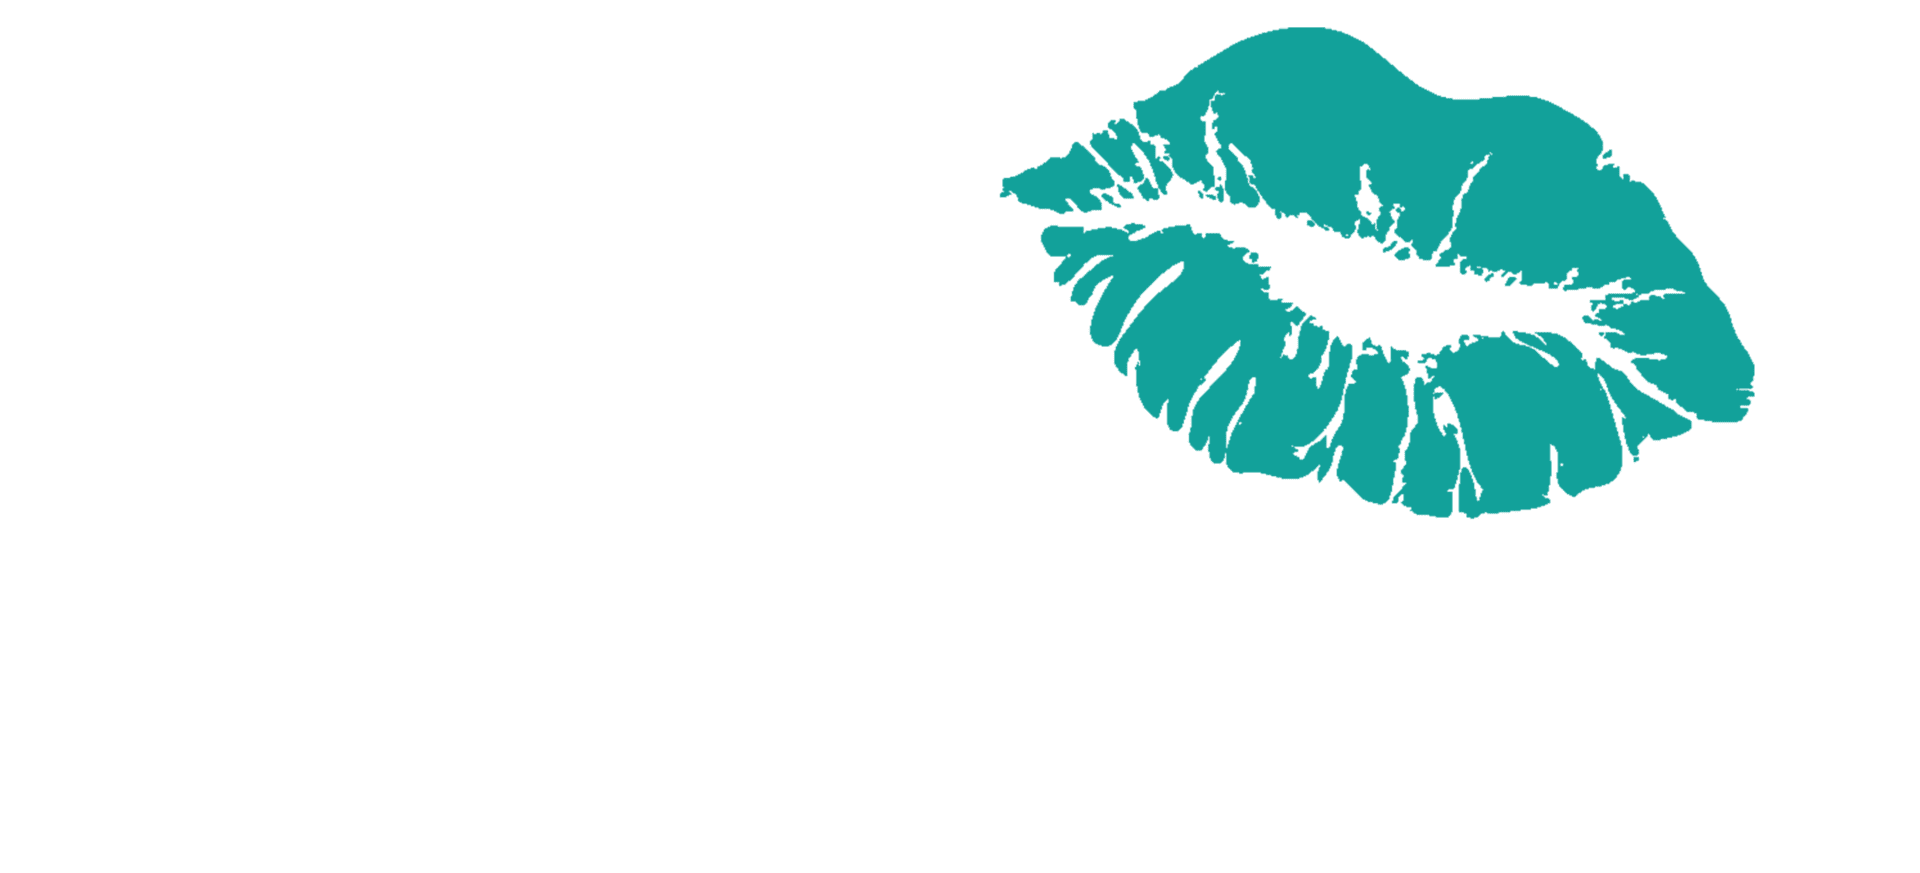 UK Skin Aesthetics Cheshire